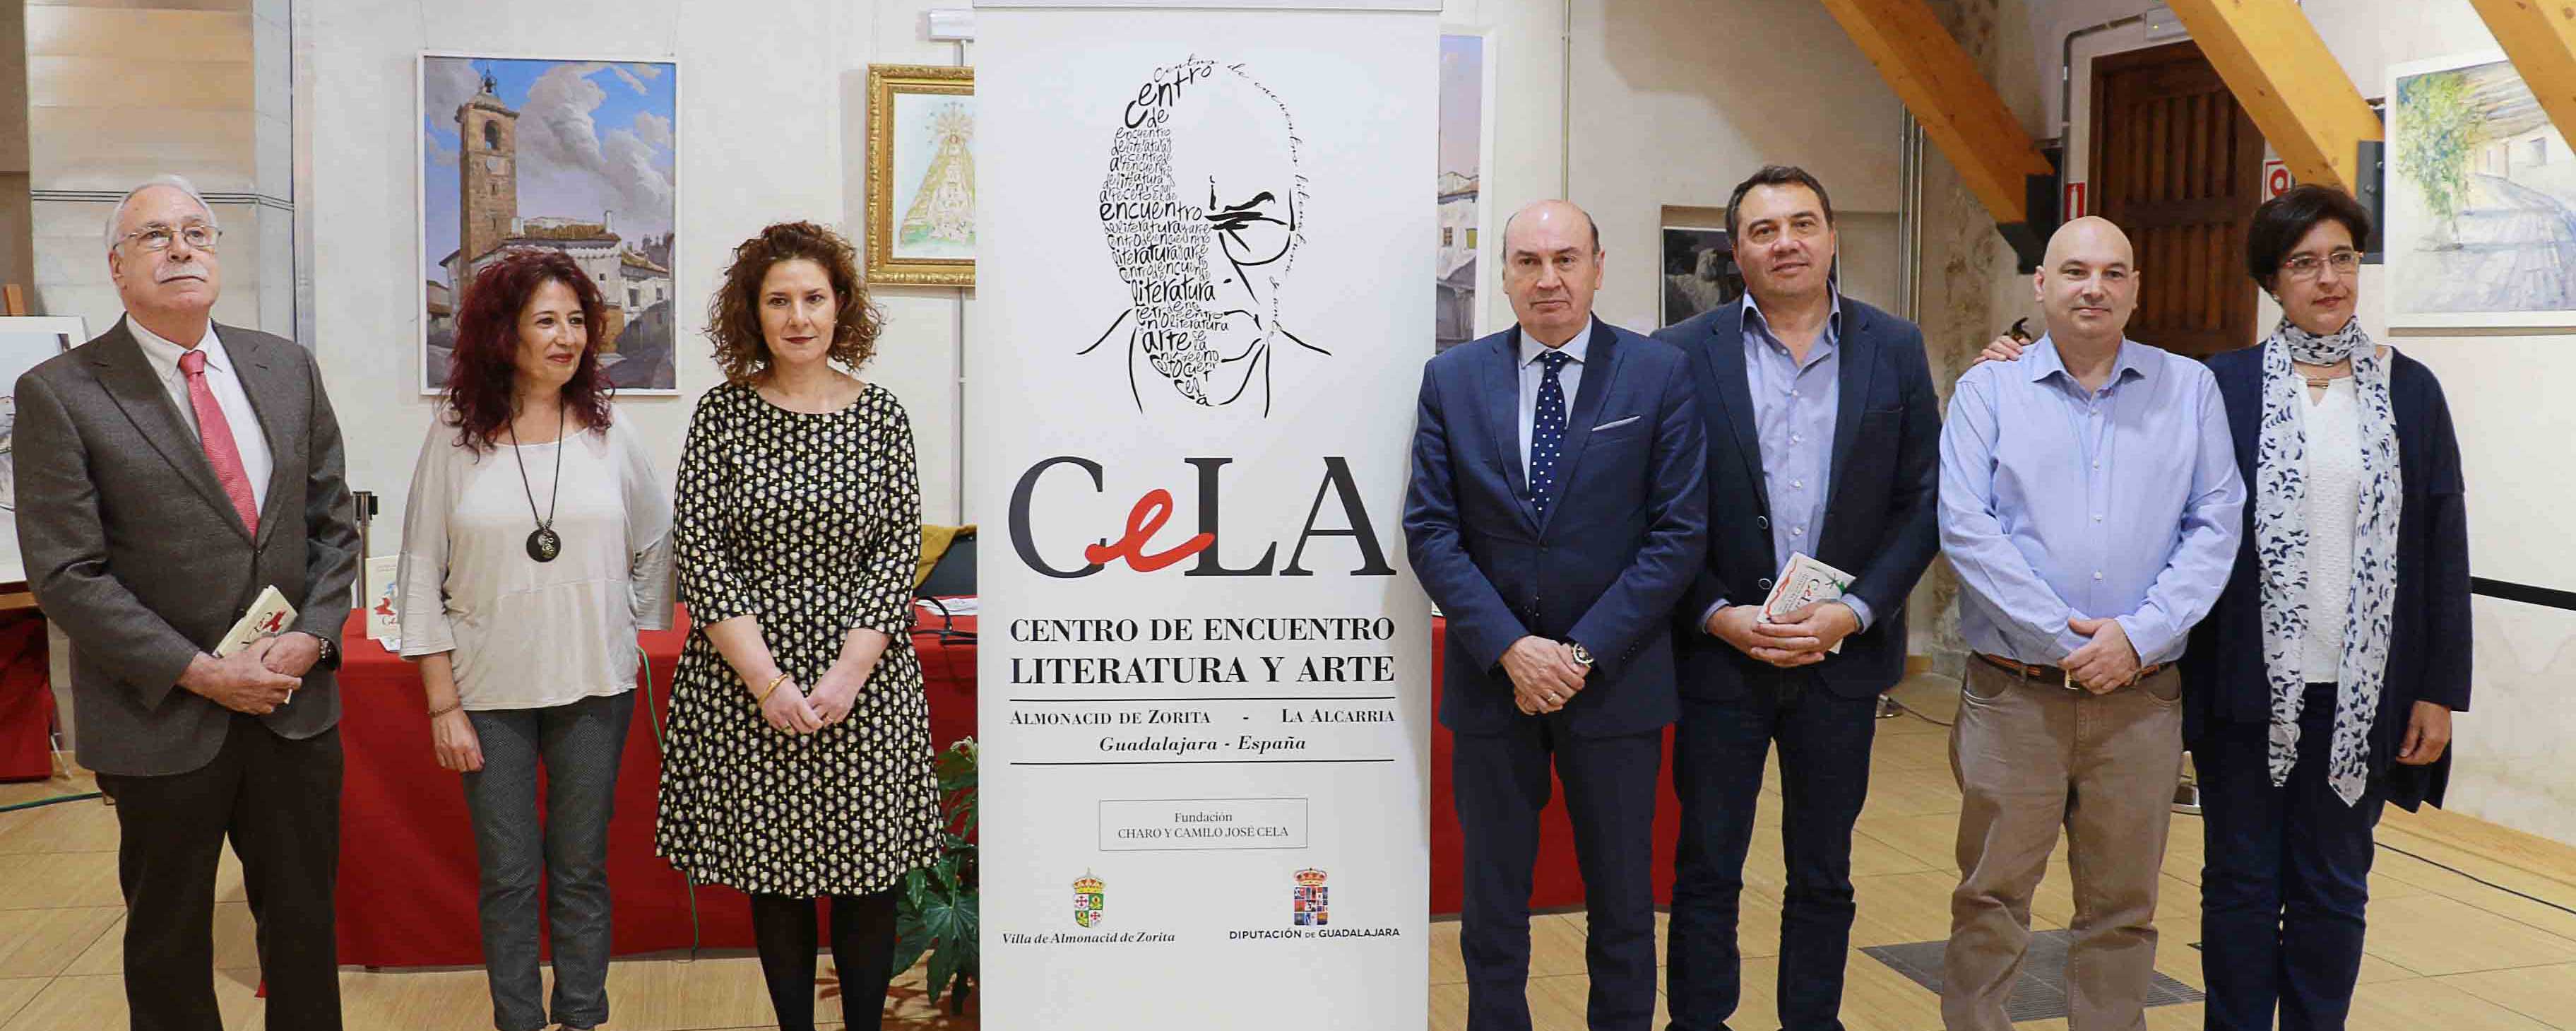 Exposición del Centro CeLA abres sus puertas